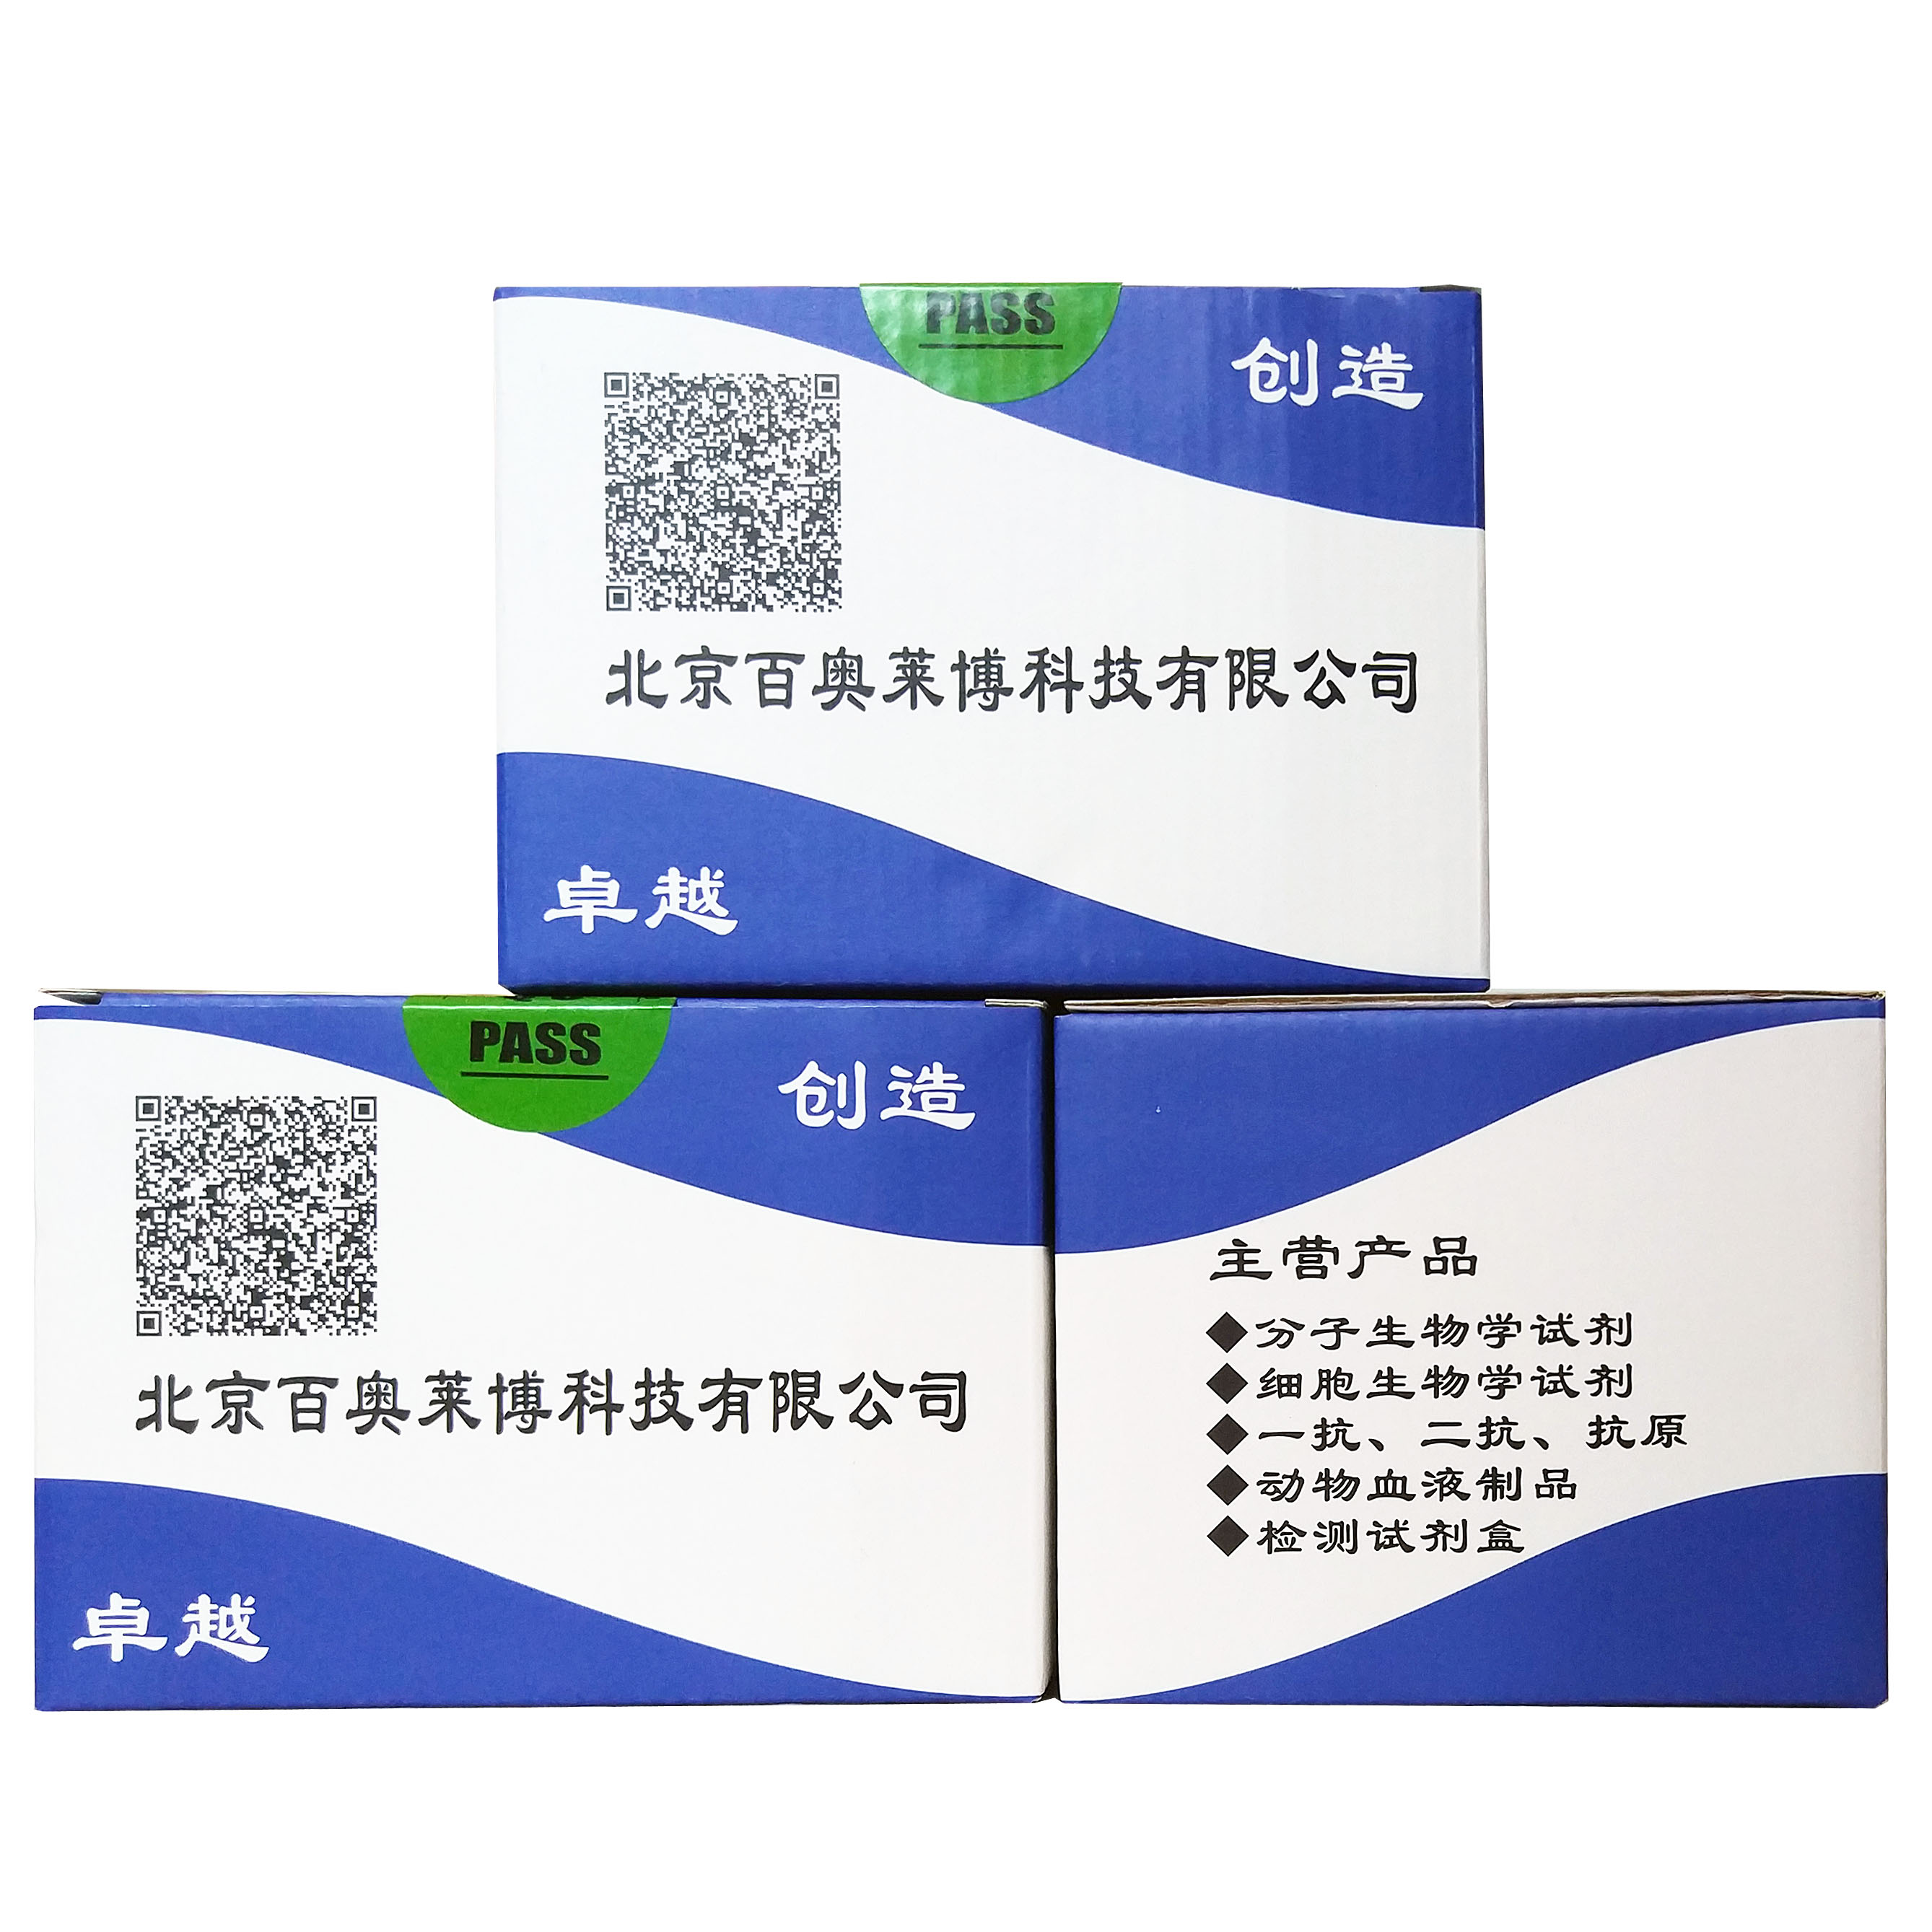 法医样本核酸提取试剂盒(磁珠法)北京品牌